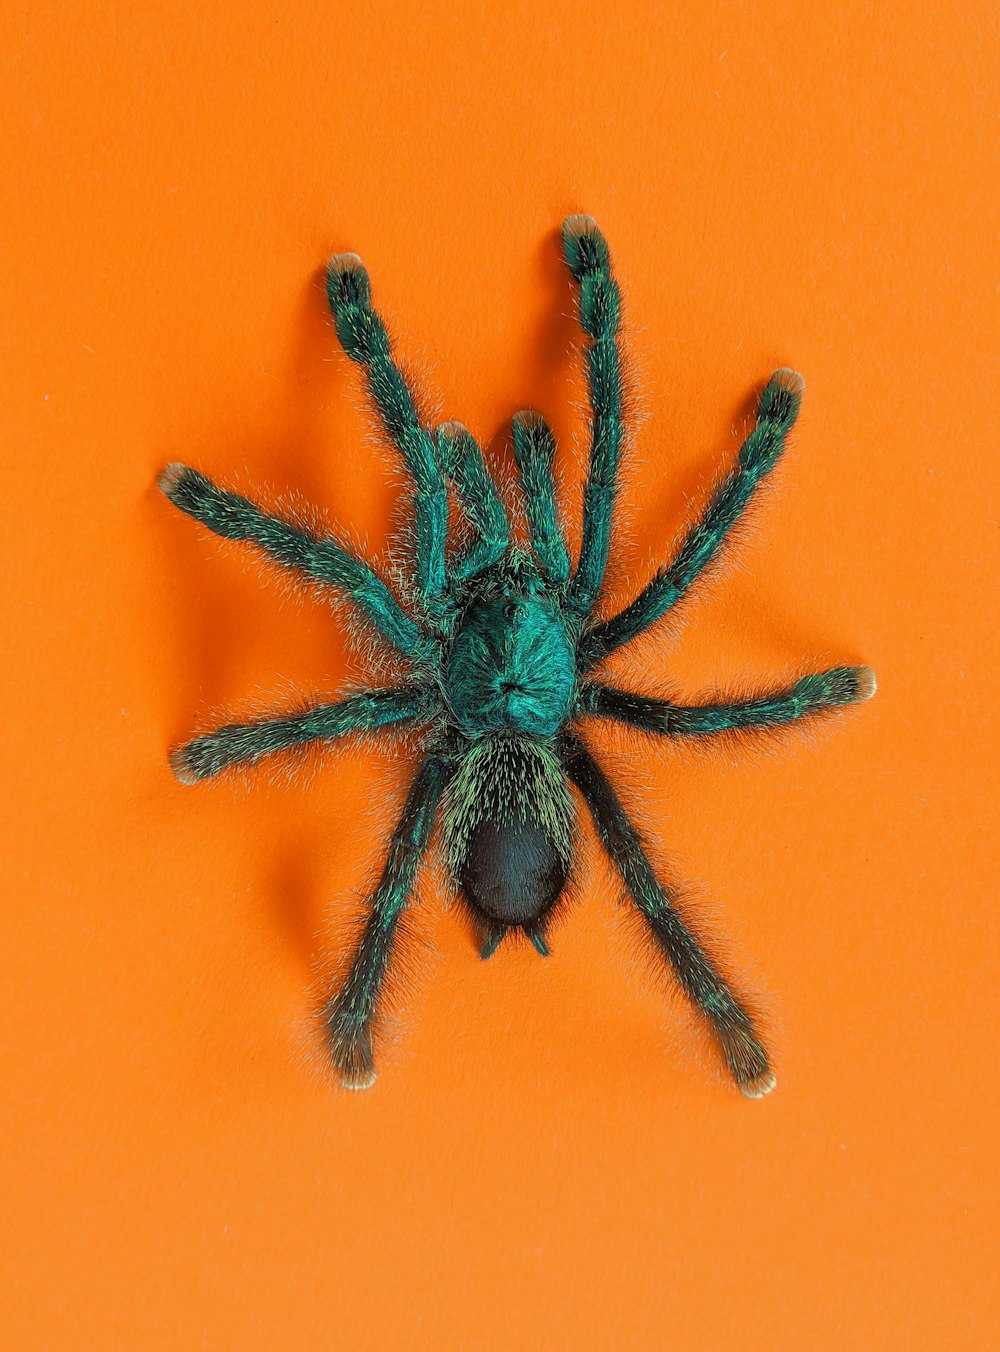 black spider on orange surface